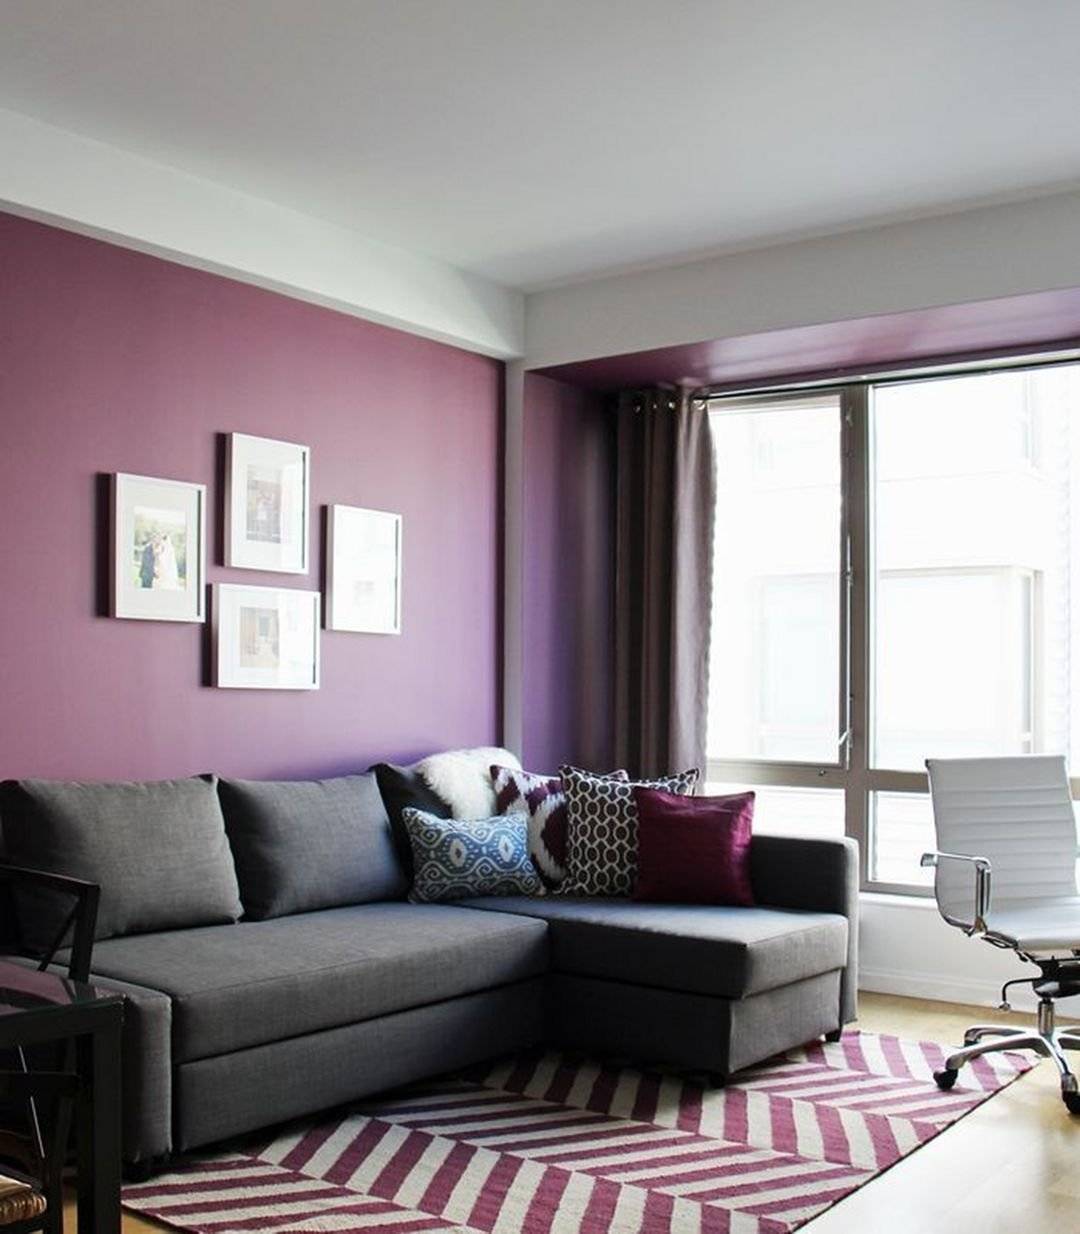 Сиреневая спальня - фото в современном стиле с белыми, серыми, бежевыми, розовыми шторами и обоями